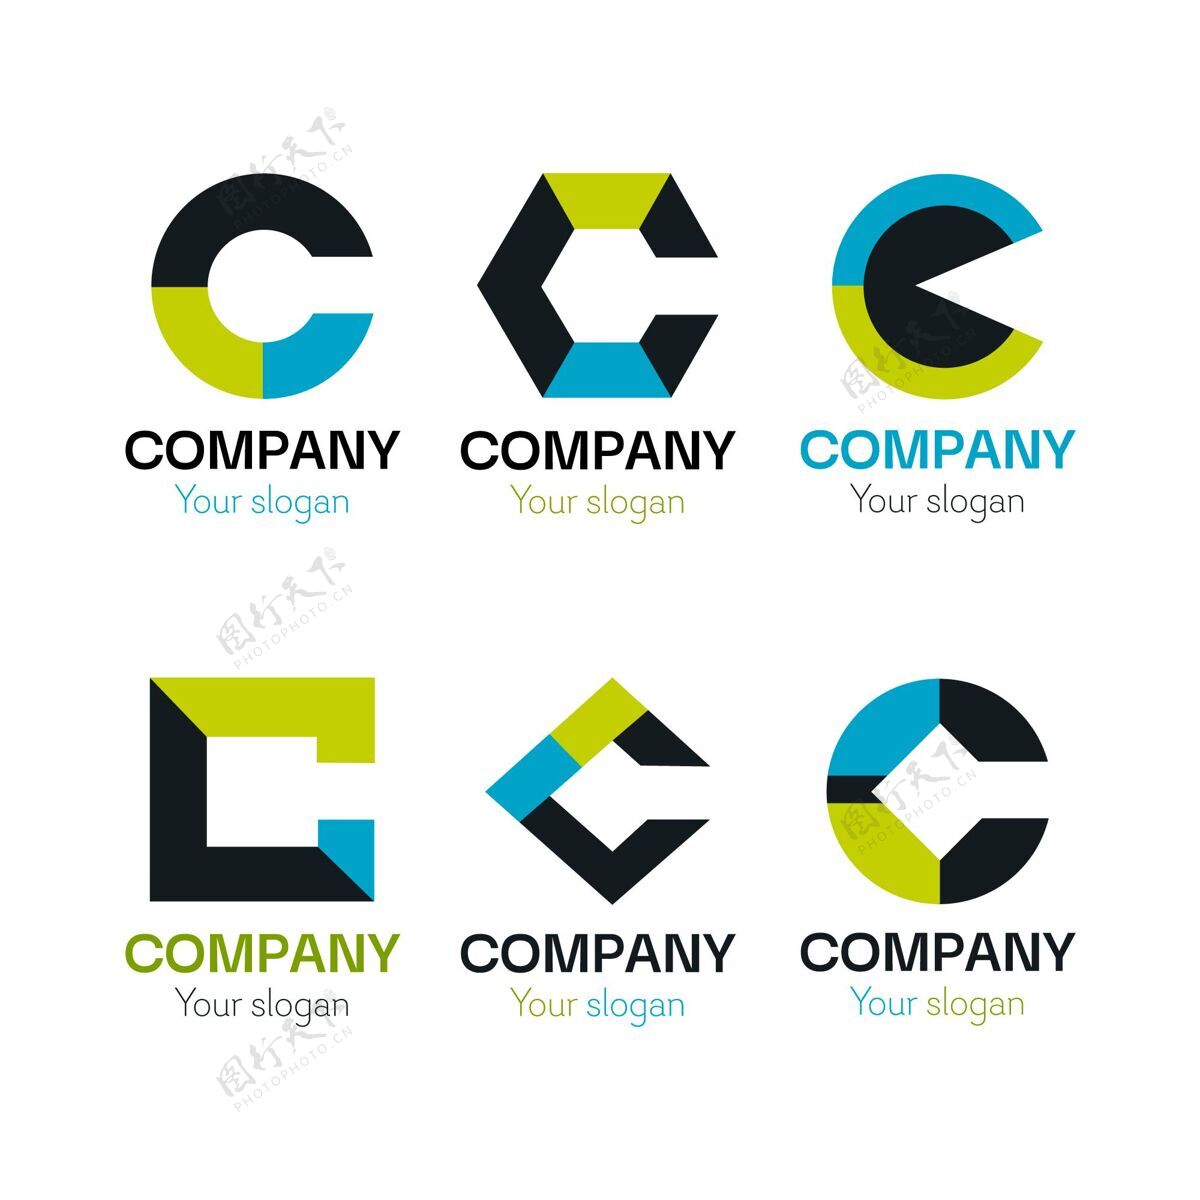 Company平面设计c标志模板包identityCorporateidentityBusinessLogo